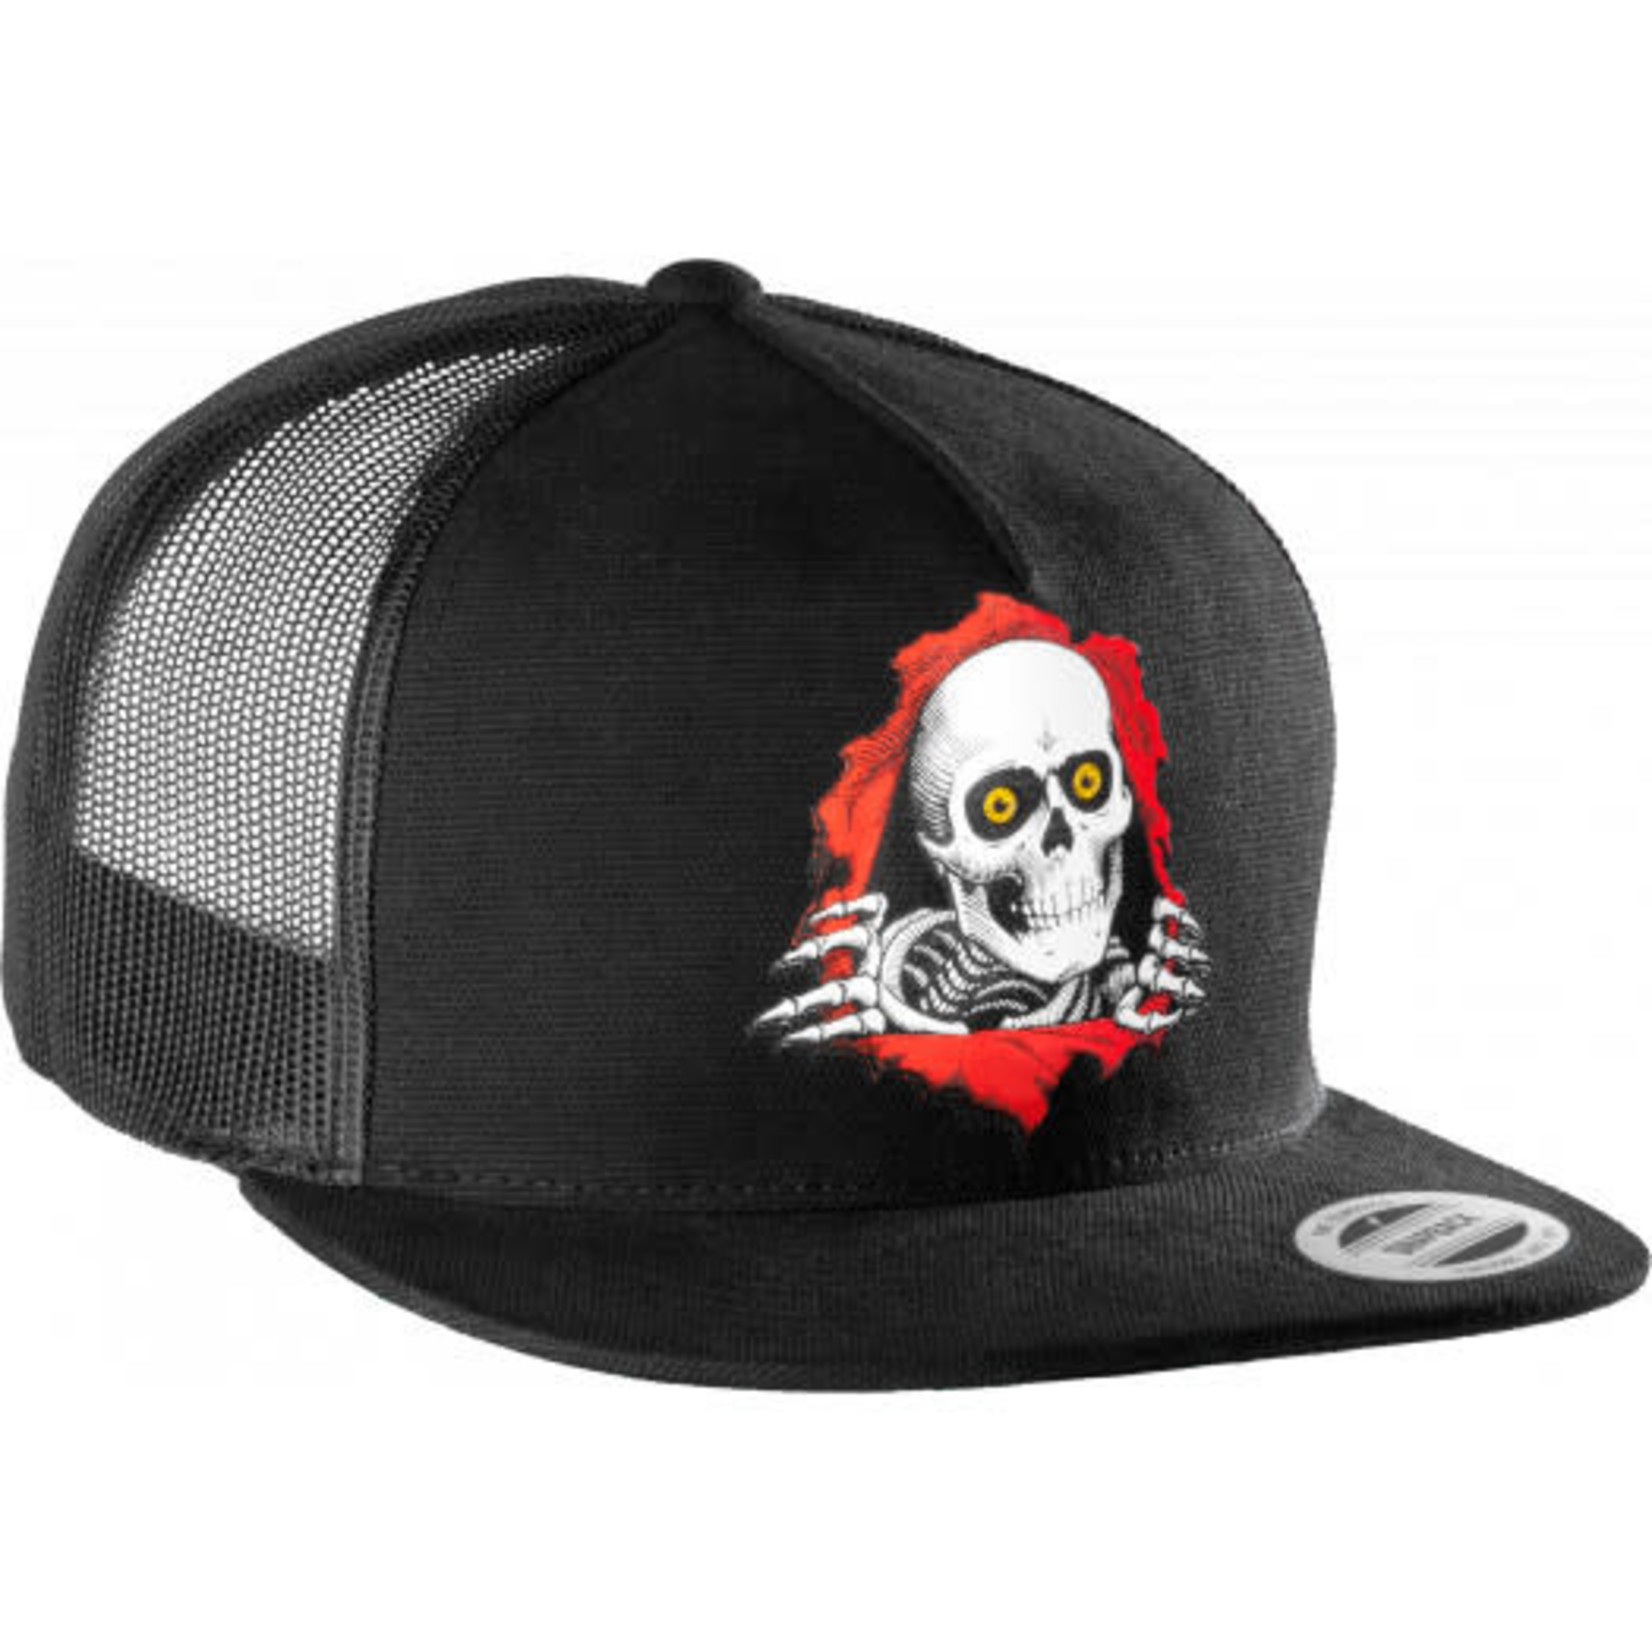 Powell Peralta Powell Peralta Trucker Ripper Snapback Hat - Black